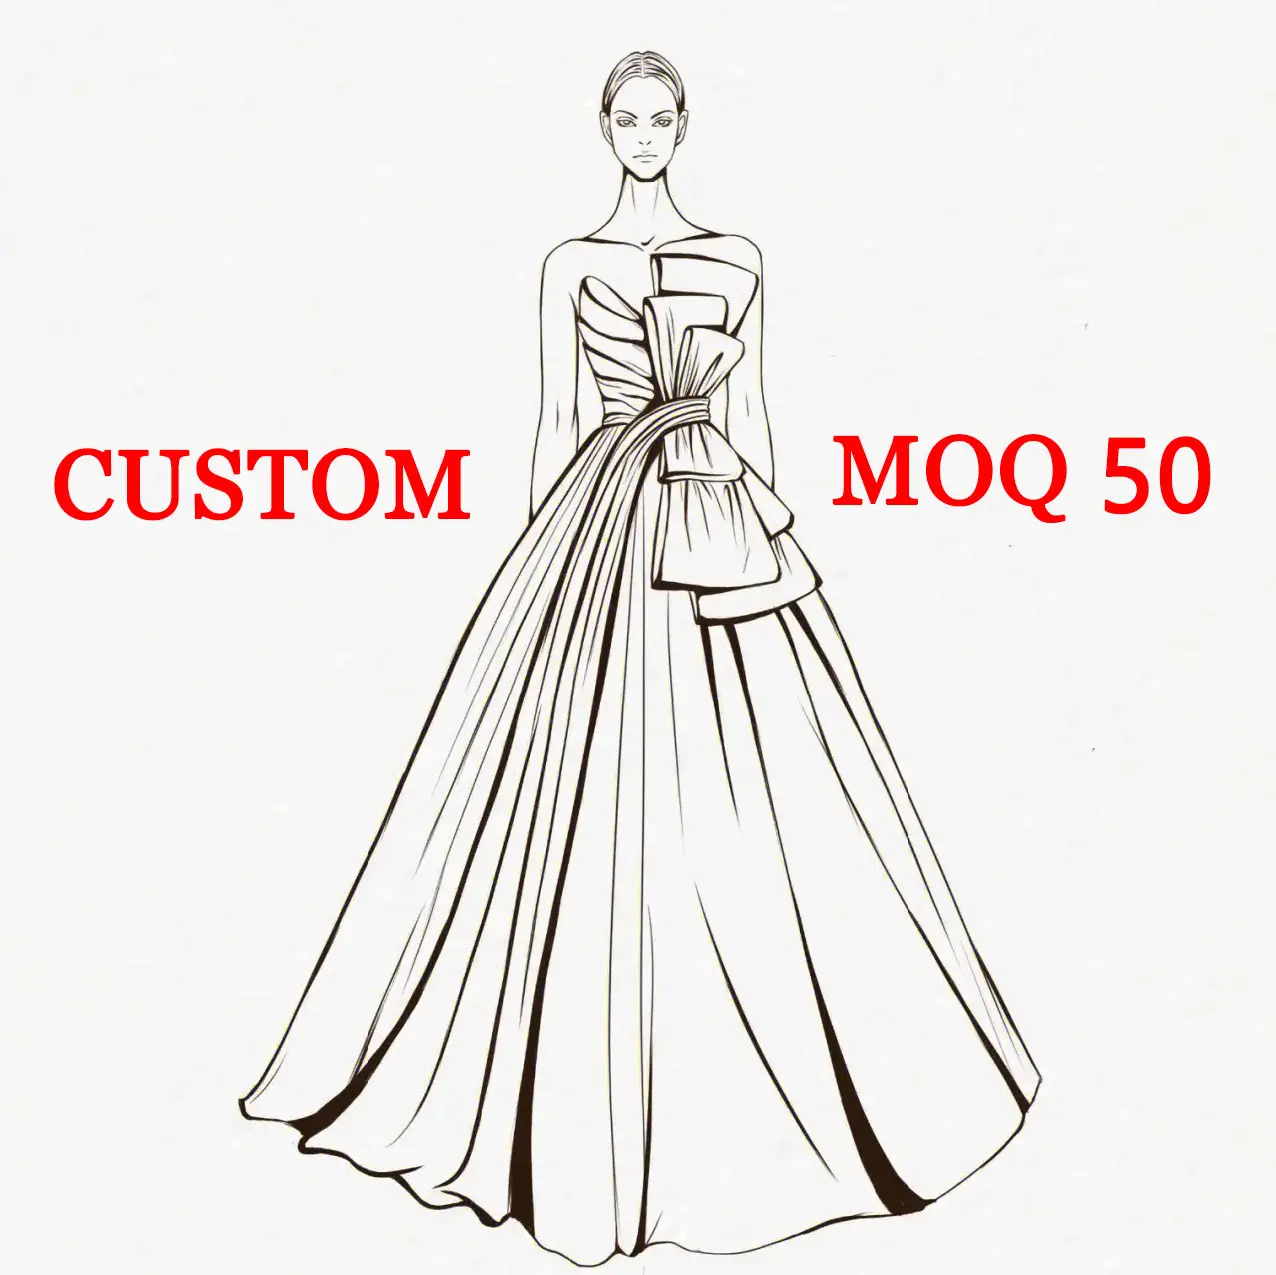 Özel Oem marka logosu küçük siparişler özel tasarımcı Premium giyim üreticileri Y2K giyim kadınlar yapılan elbise